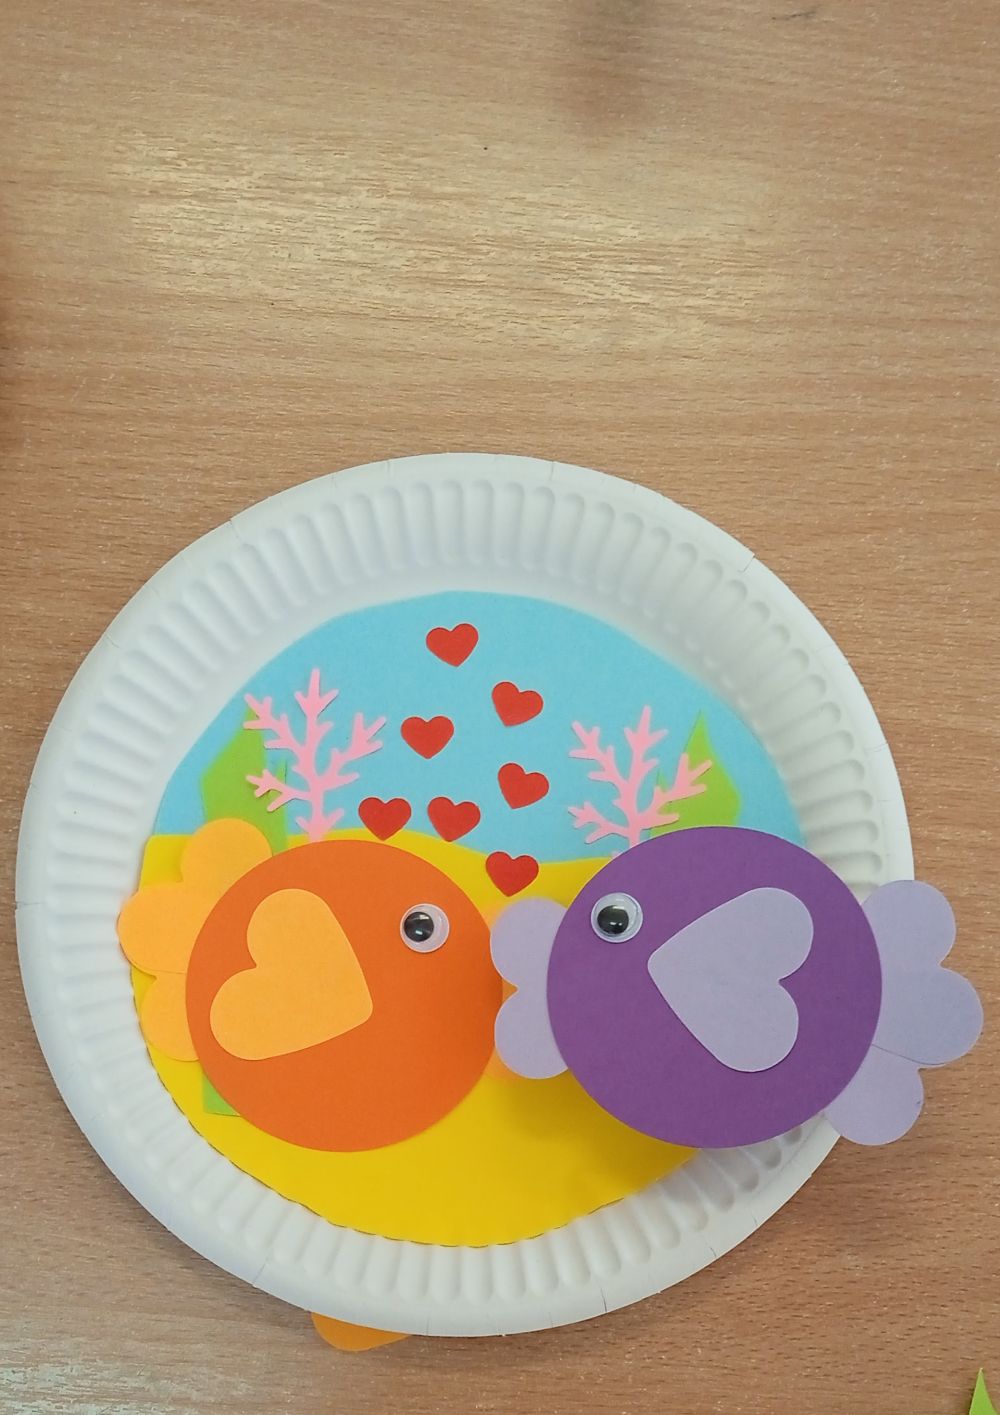 Praca plastyczna na papierowym talerzyku : dno oceanu i dwie kolorowe rybki dające sobie buziaka i serduszka